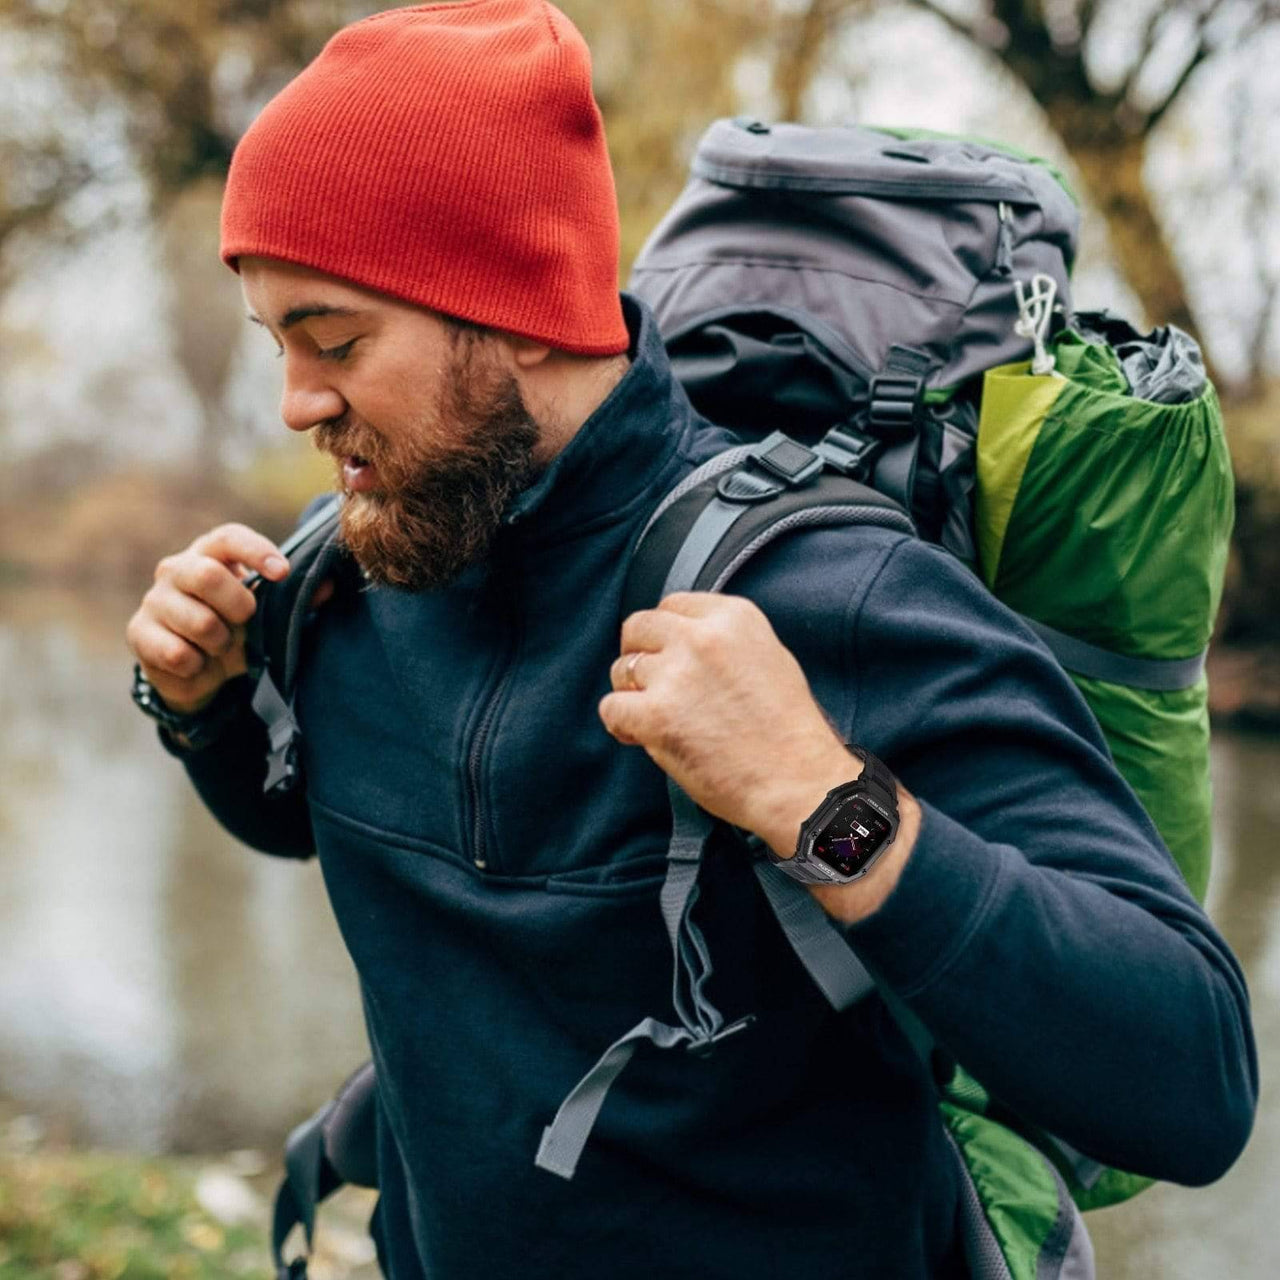 Survival Gears Depot Smart Watches Hiker Fitness Tracker Watch